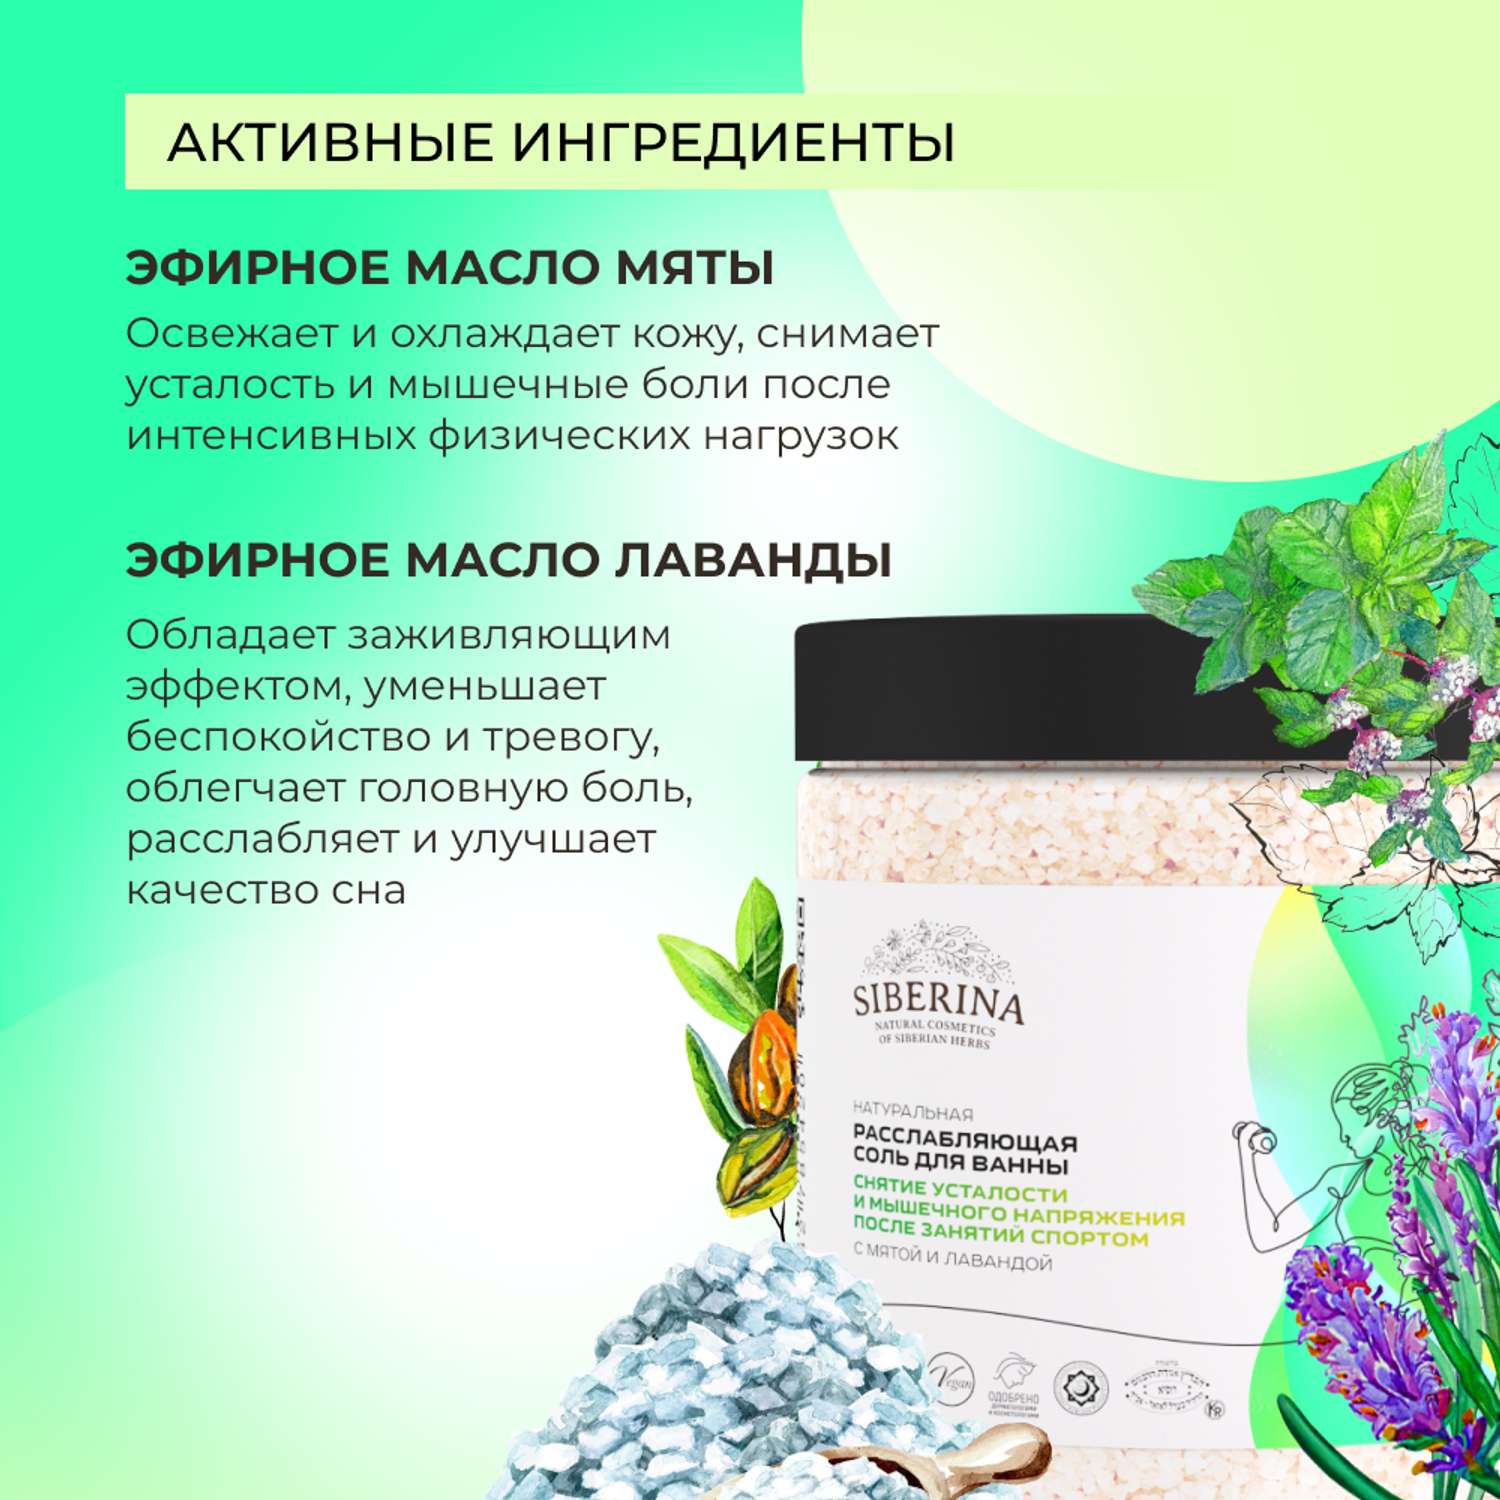 Соль для ванны Siberina натуральная «Снятие усталости и мышечного напряжения» морская расслабляющая 600 г - фото 4